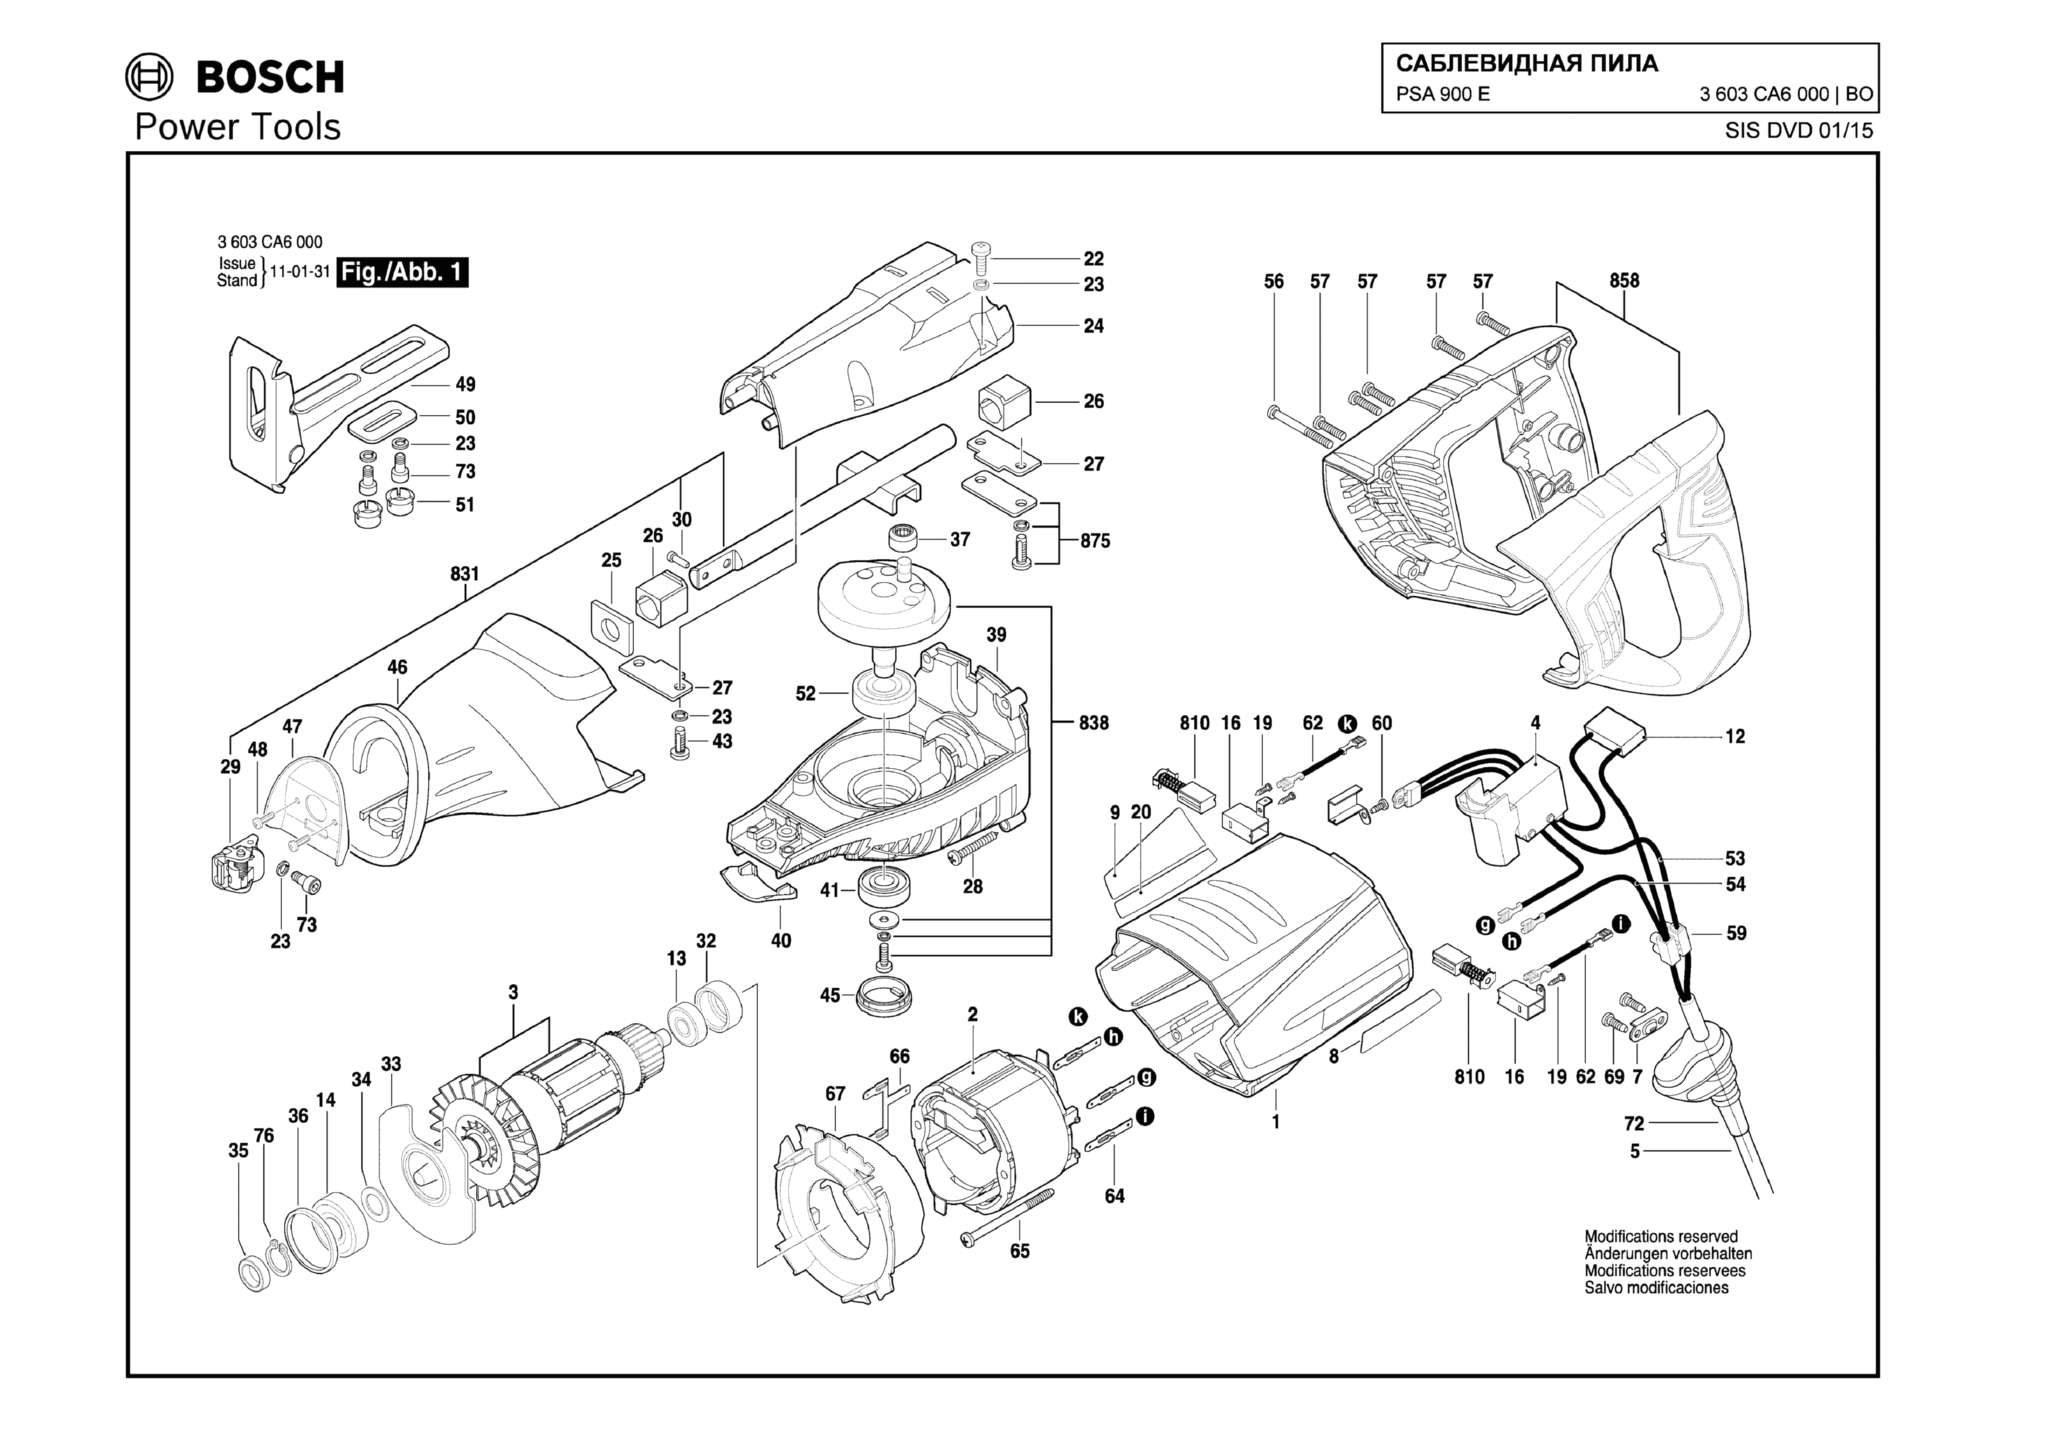 Запчасти, схема и деталировка Bosch PSA 900 E (ТИП 3603CA6000)